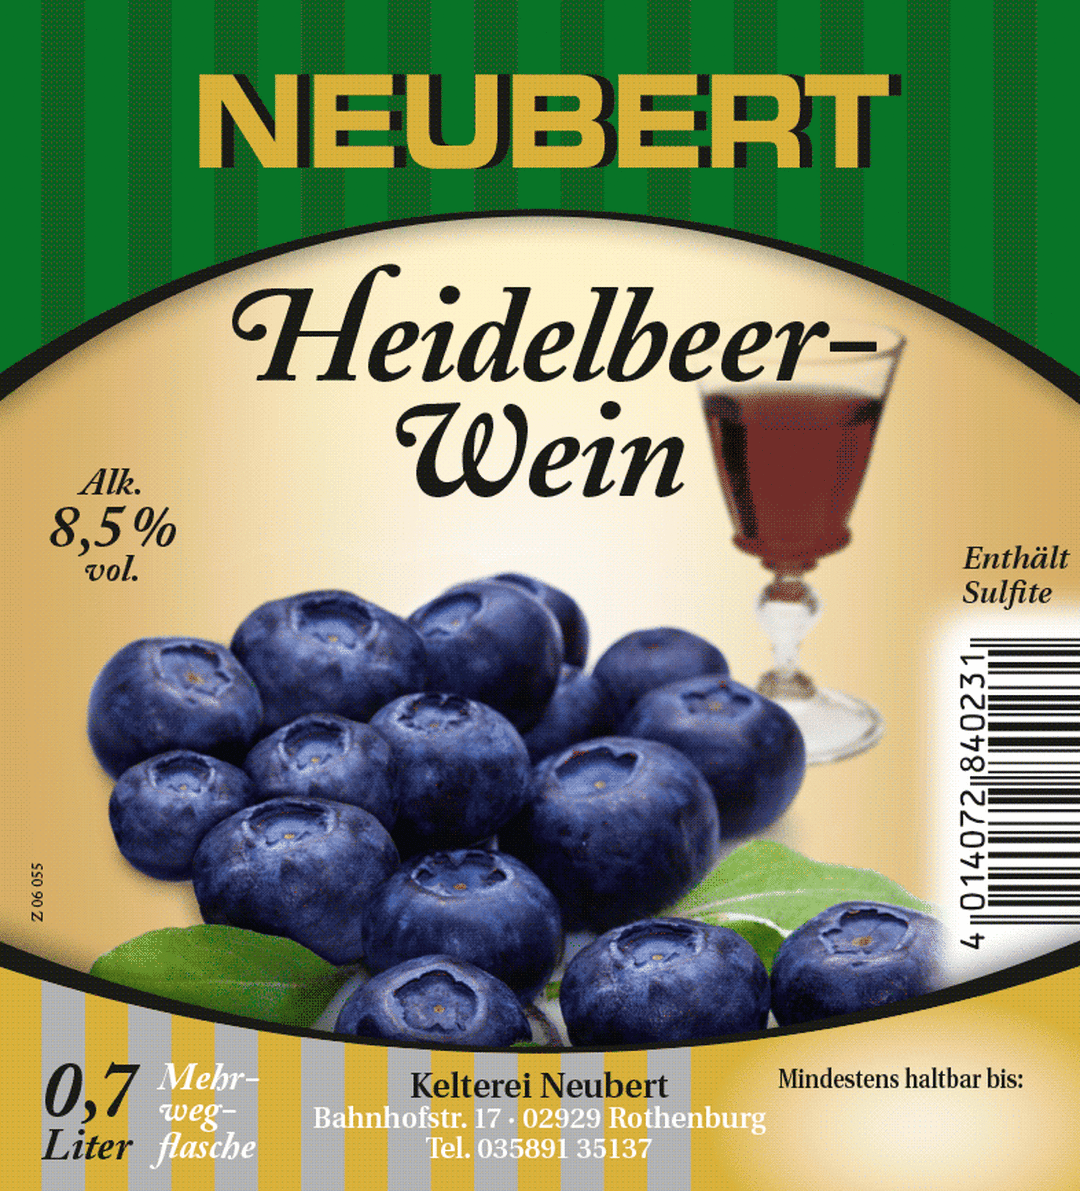 Neubert Heidelbeerwein - M. Hubauer GmbH